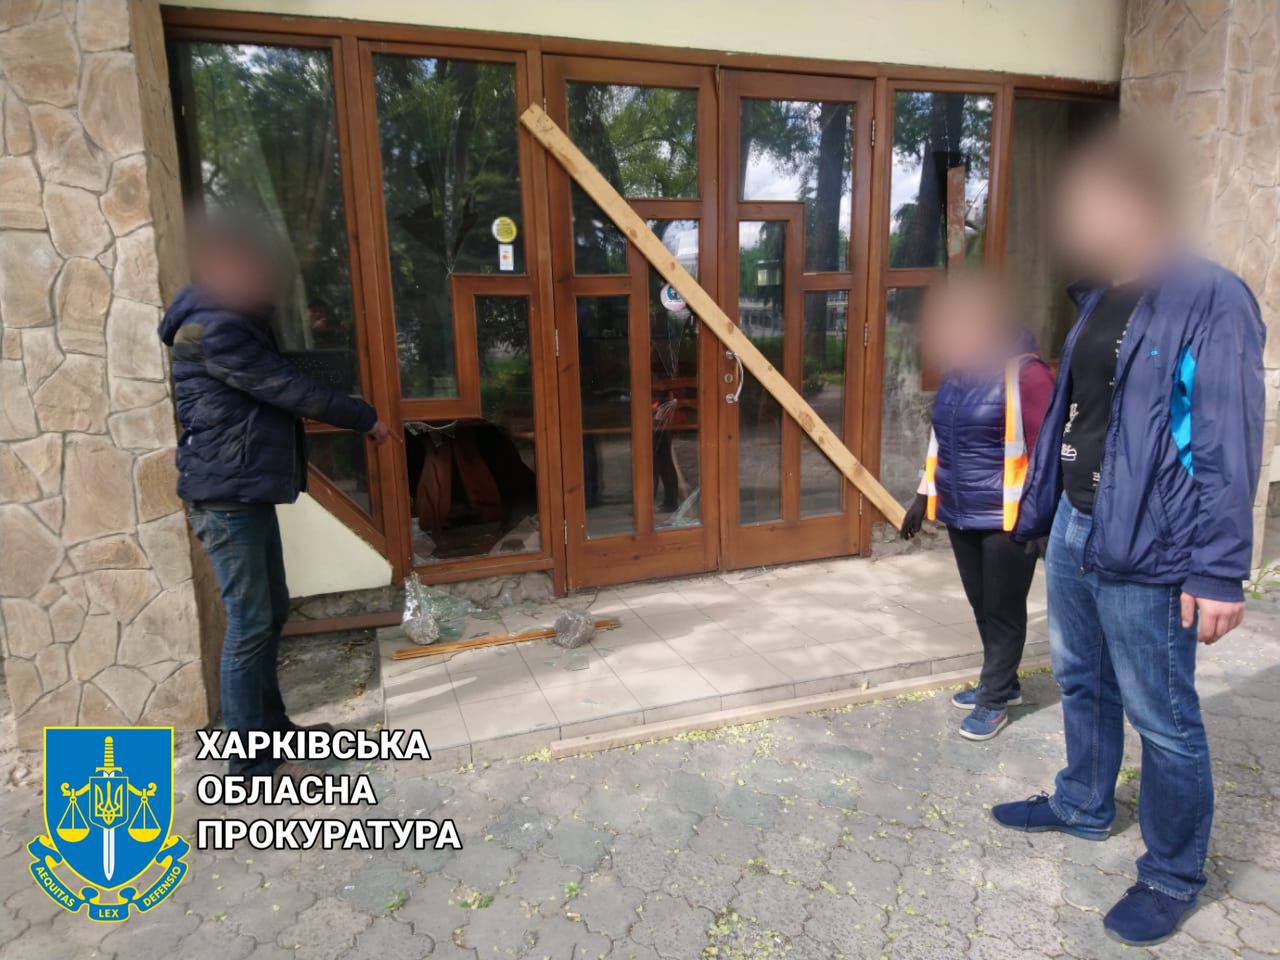 В Харькове прохожий задержал мародера, ограбившего кафе